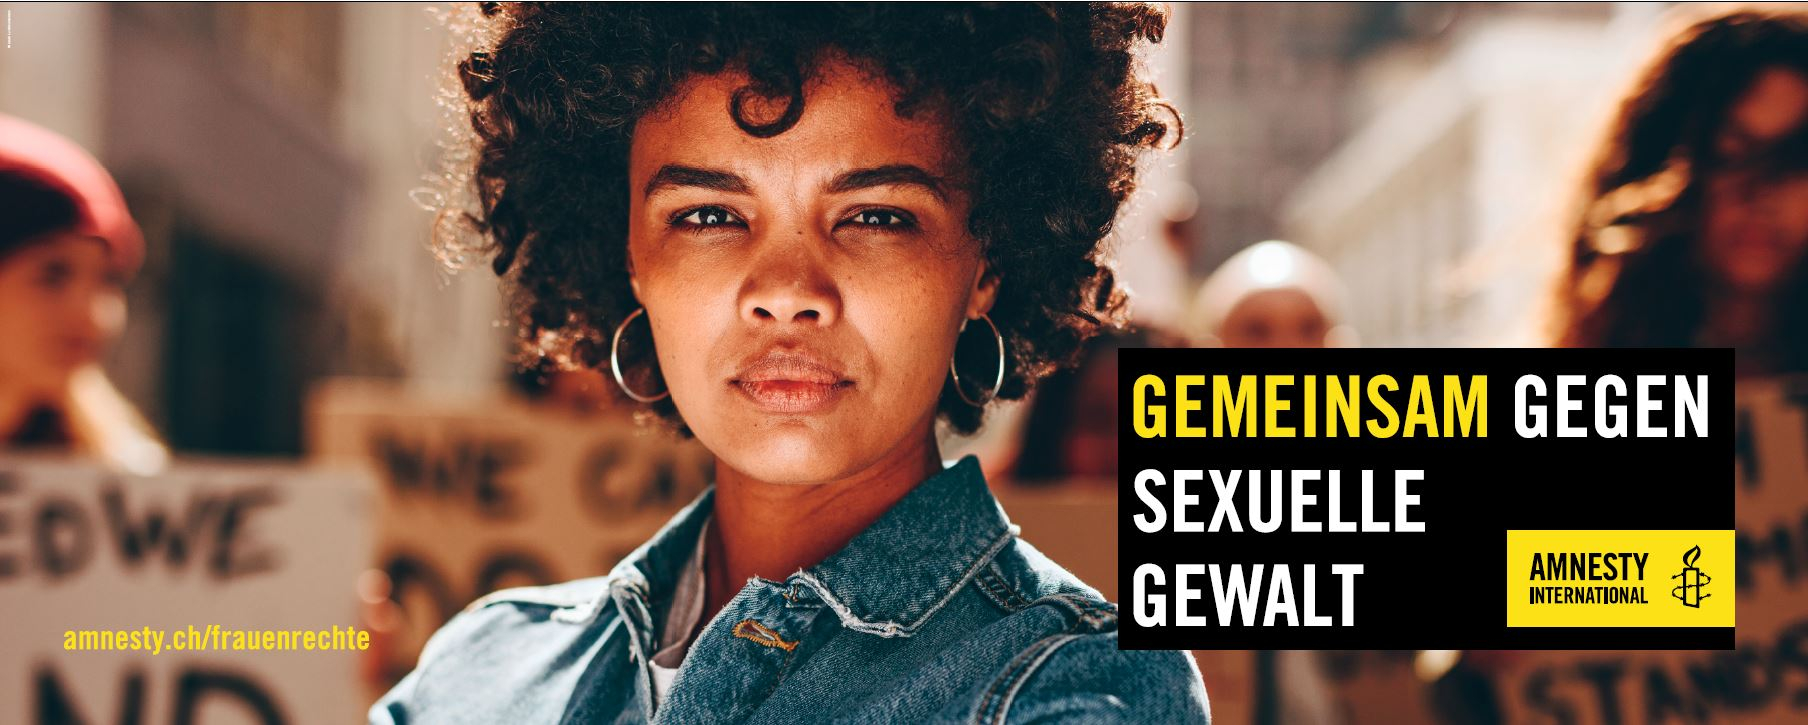 Stoffbanner mit Slogan für die Kampagne « GEMEINSAM GEGEN SEXUELLE GEWALT » 